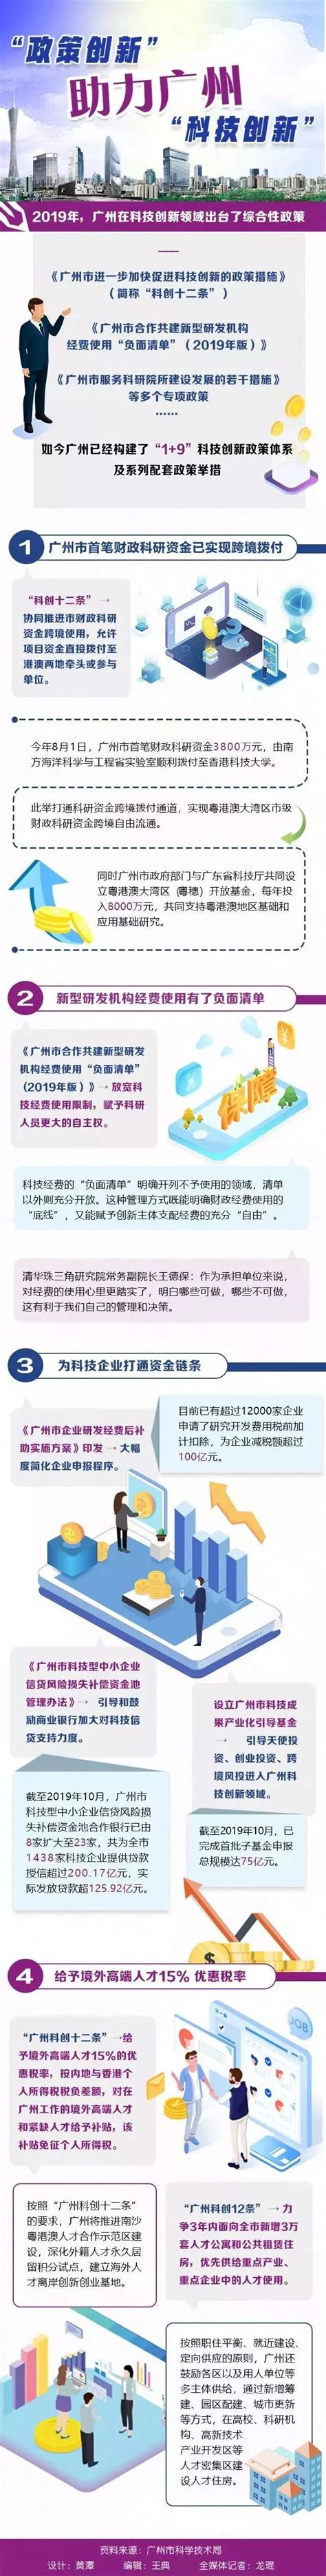 中国金融科技创新应用报告-零壹智库Pro